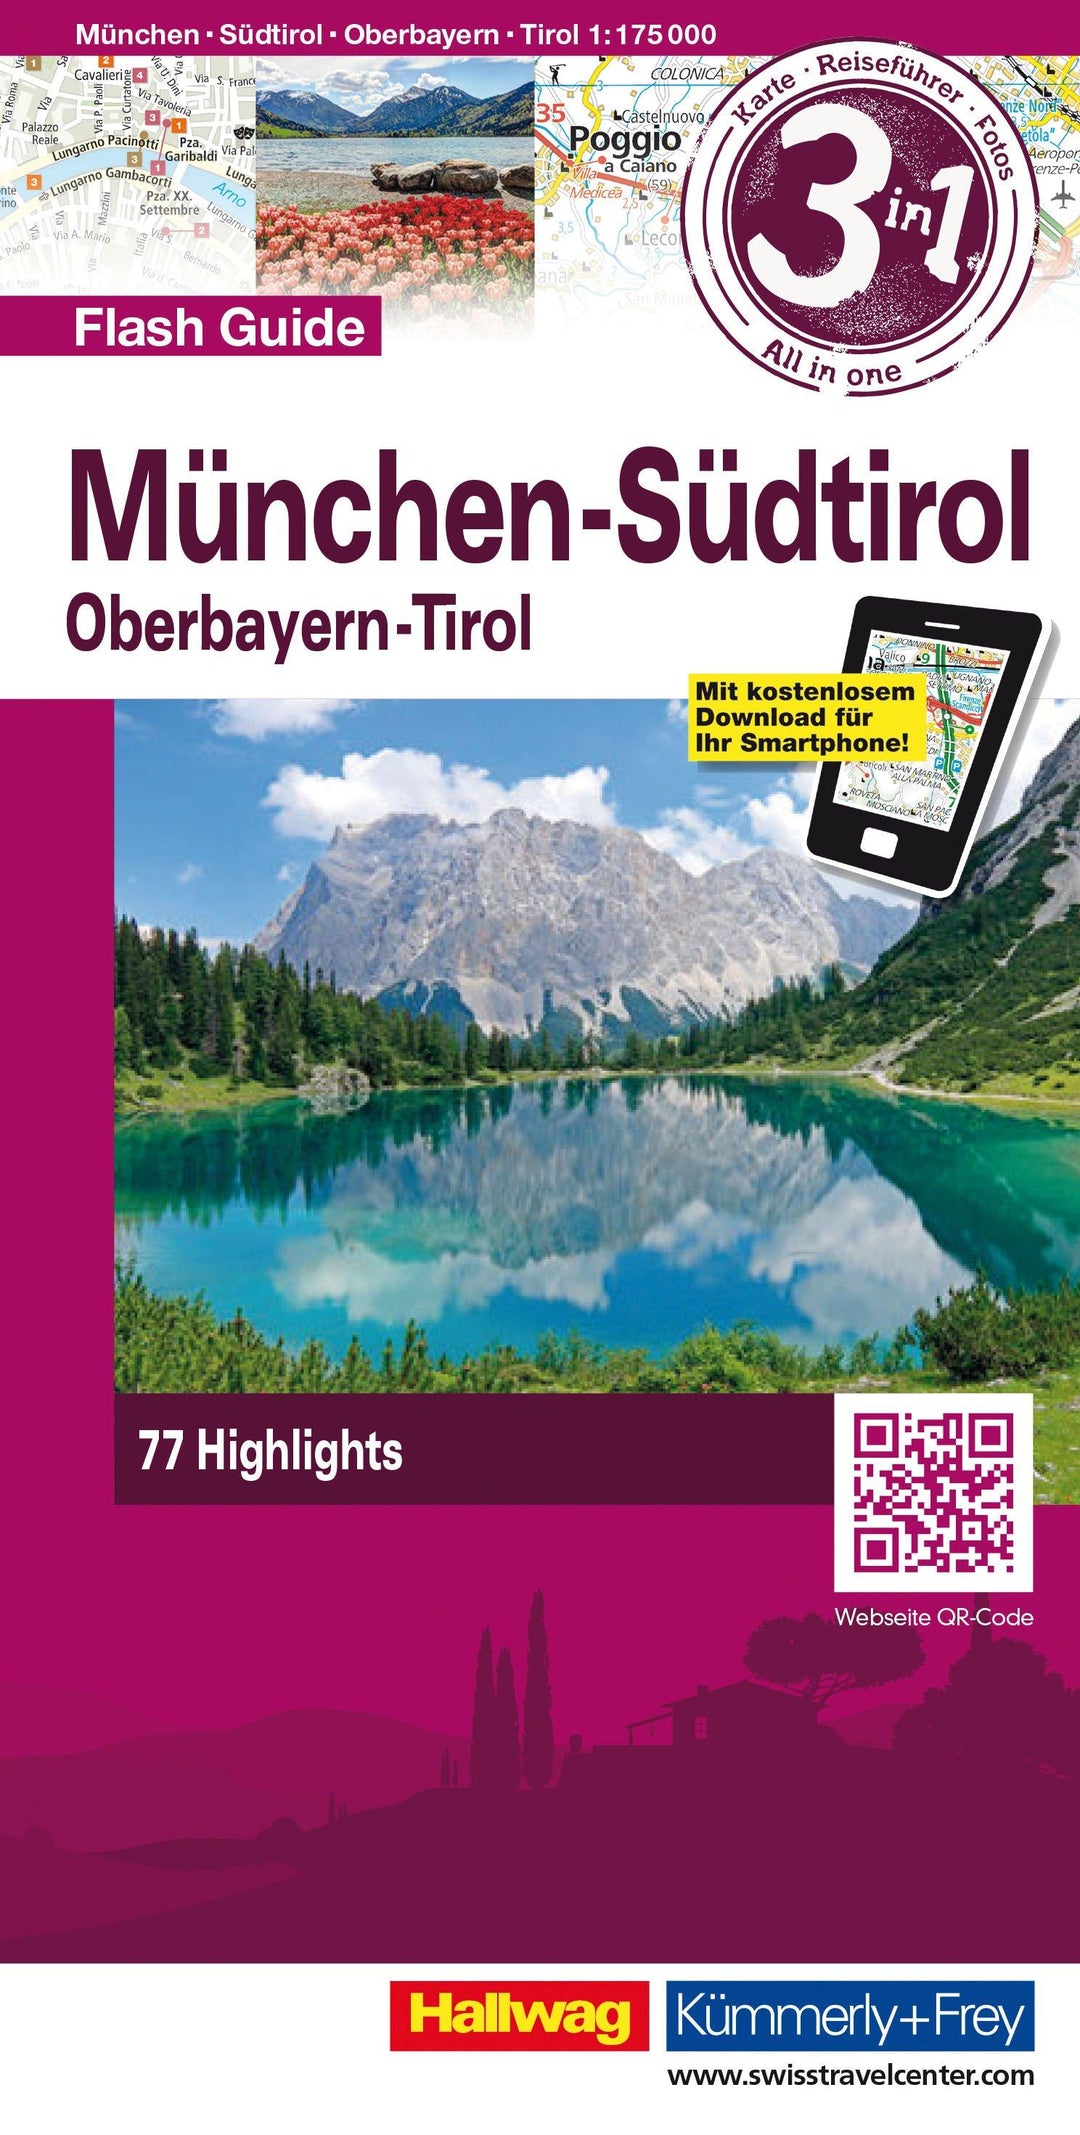 Carte de voyage - Munich, Tyrol du Sud, Haute-Bavière Flash Guide | Hallwag carte pliée Hallwag 